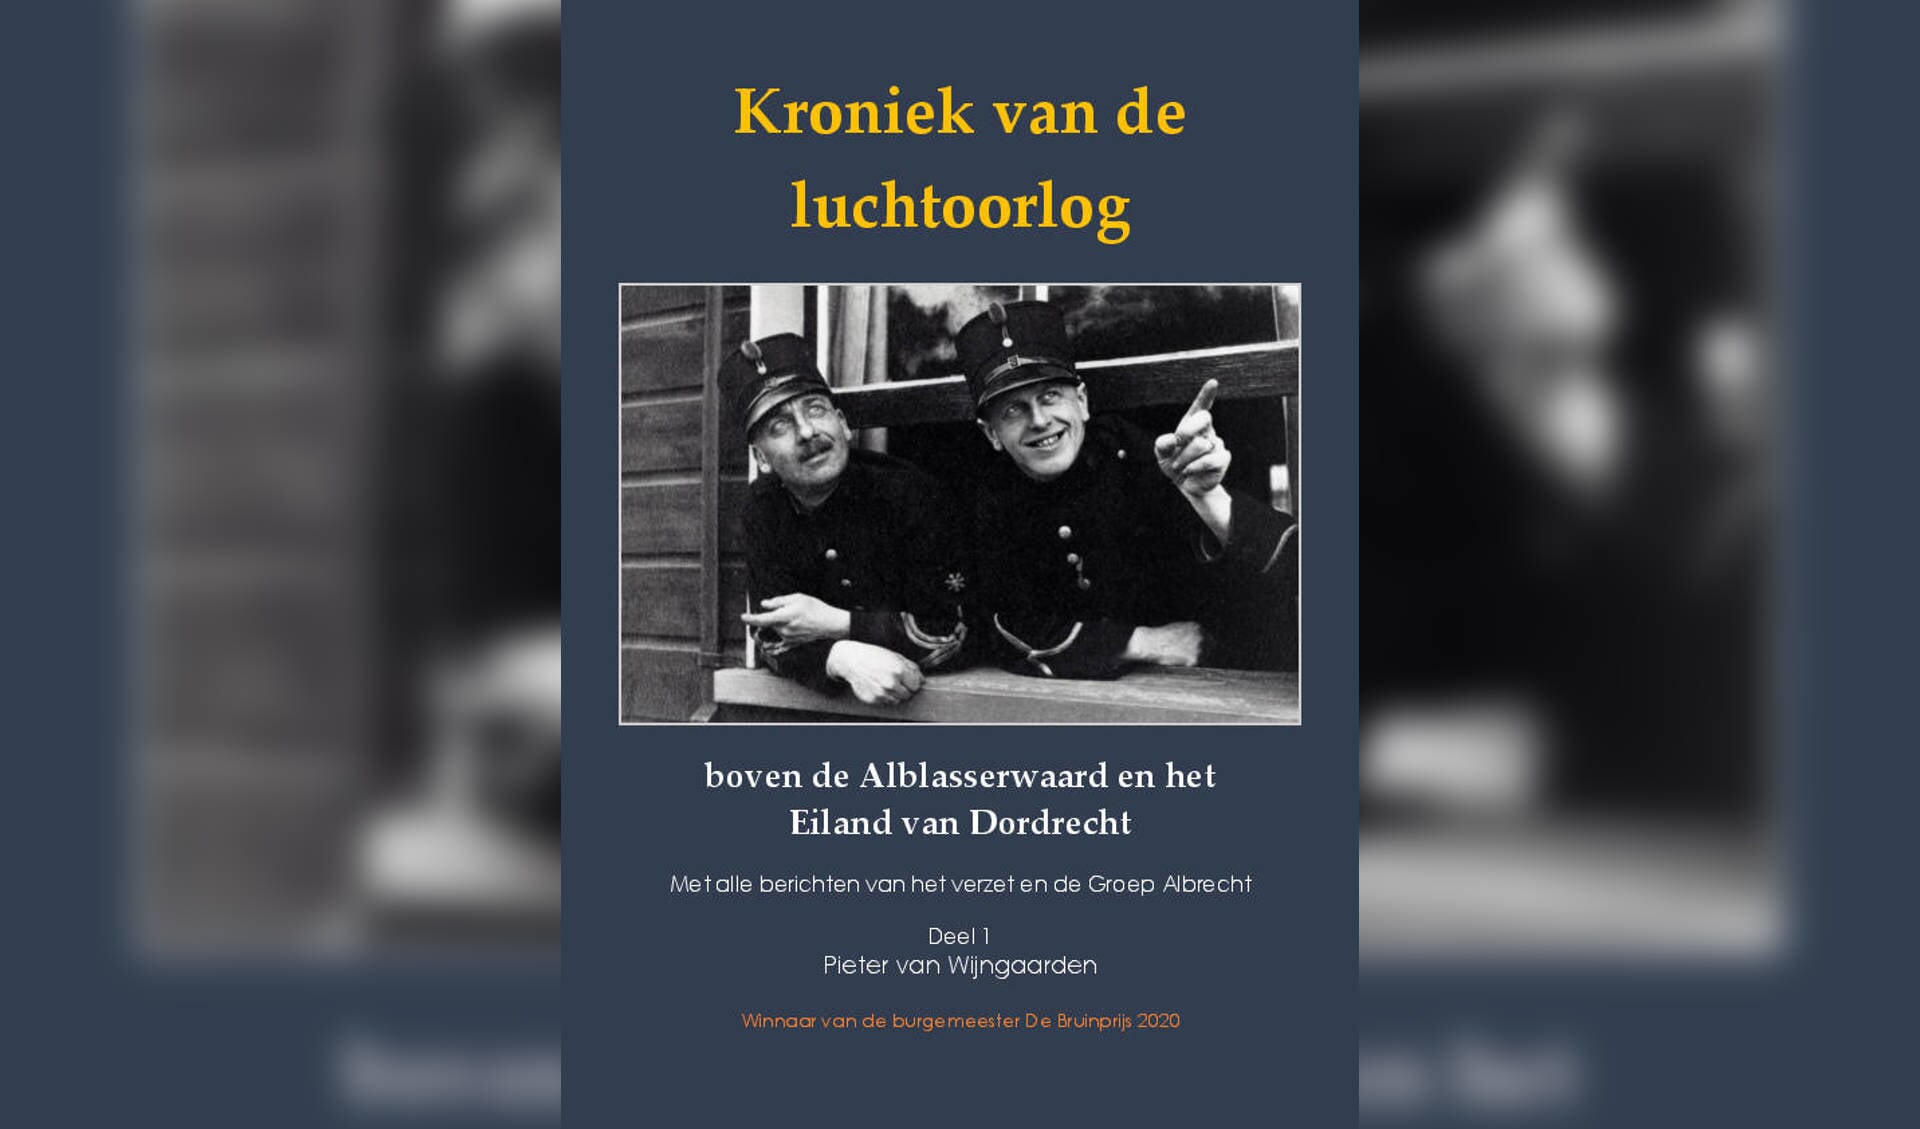 Het boek van Pieter van Wijngaarden verschijnt op 5 mei